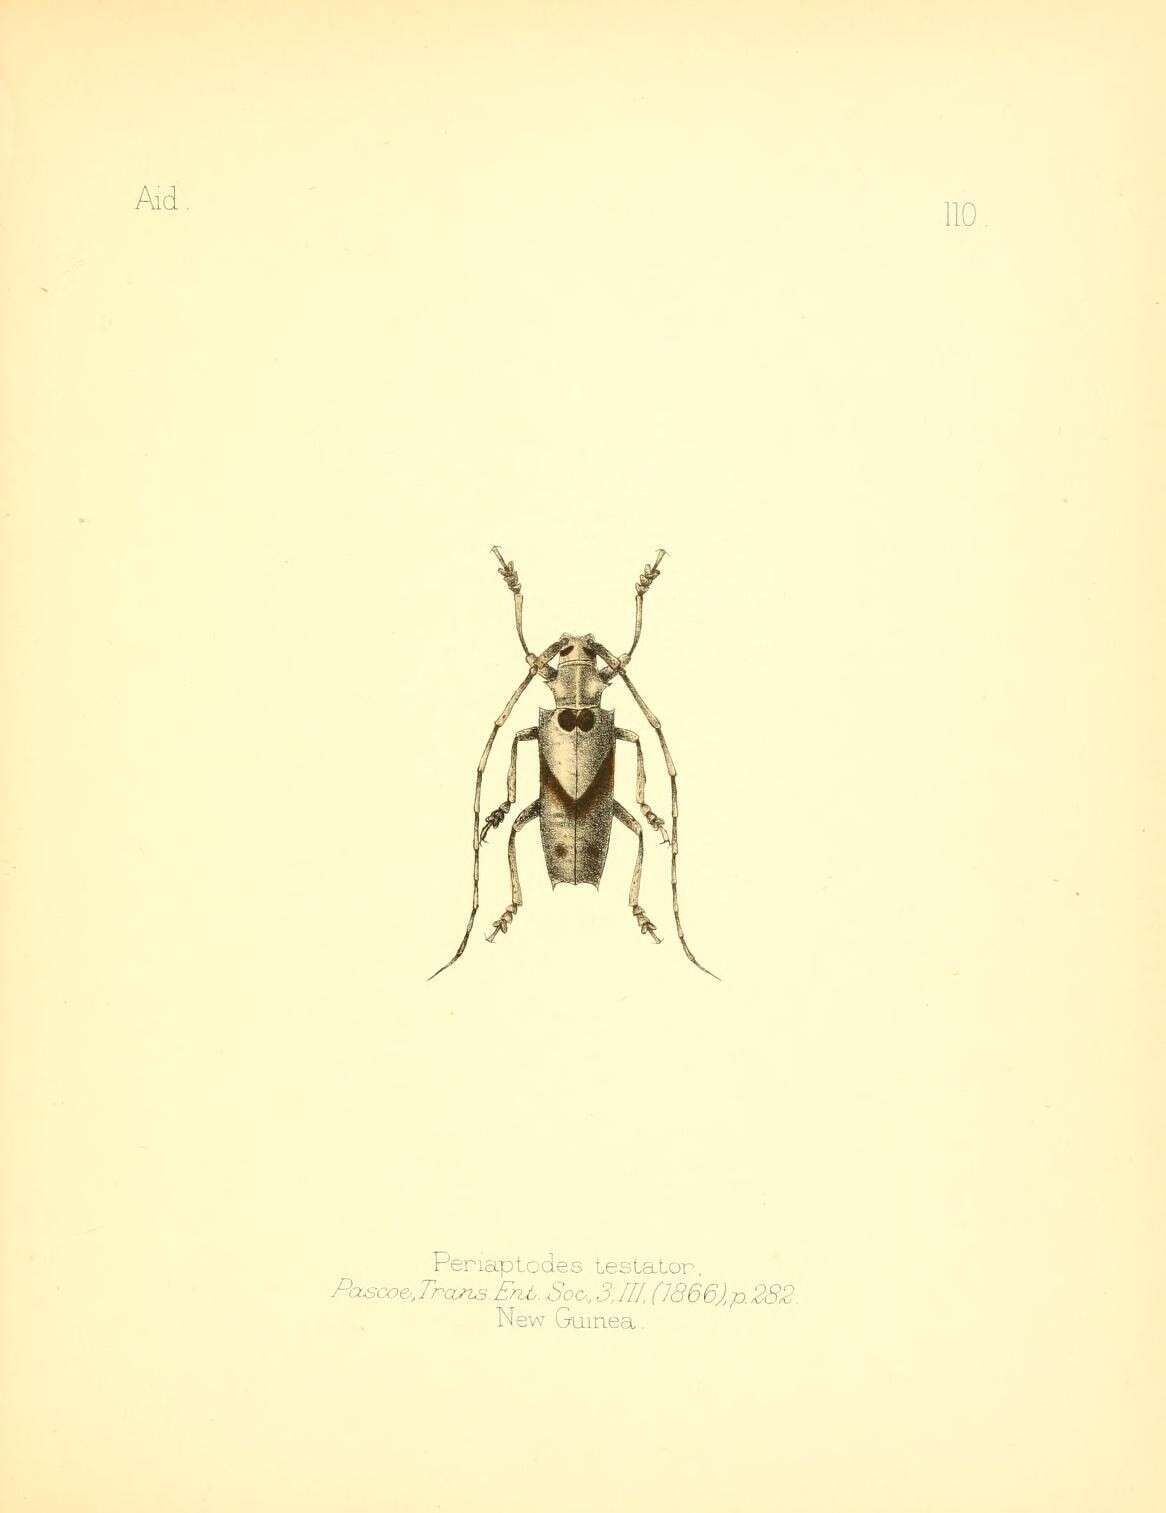 Sivun Potemnemus testator (Pascoe 1866) kuva